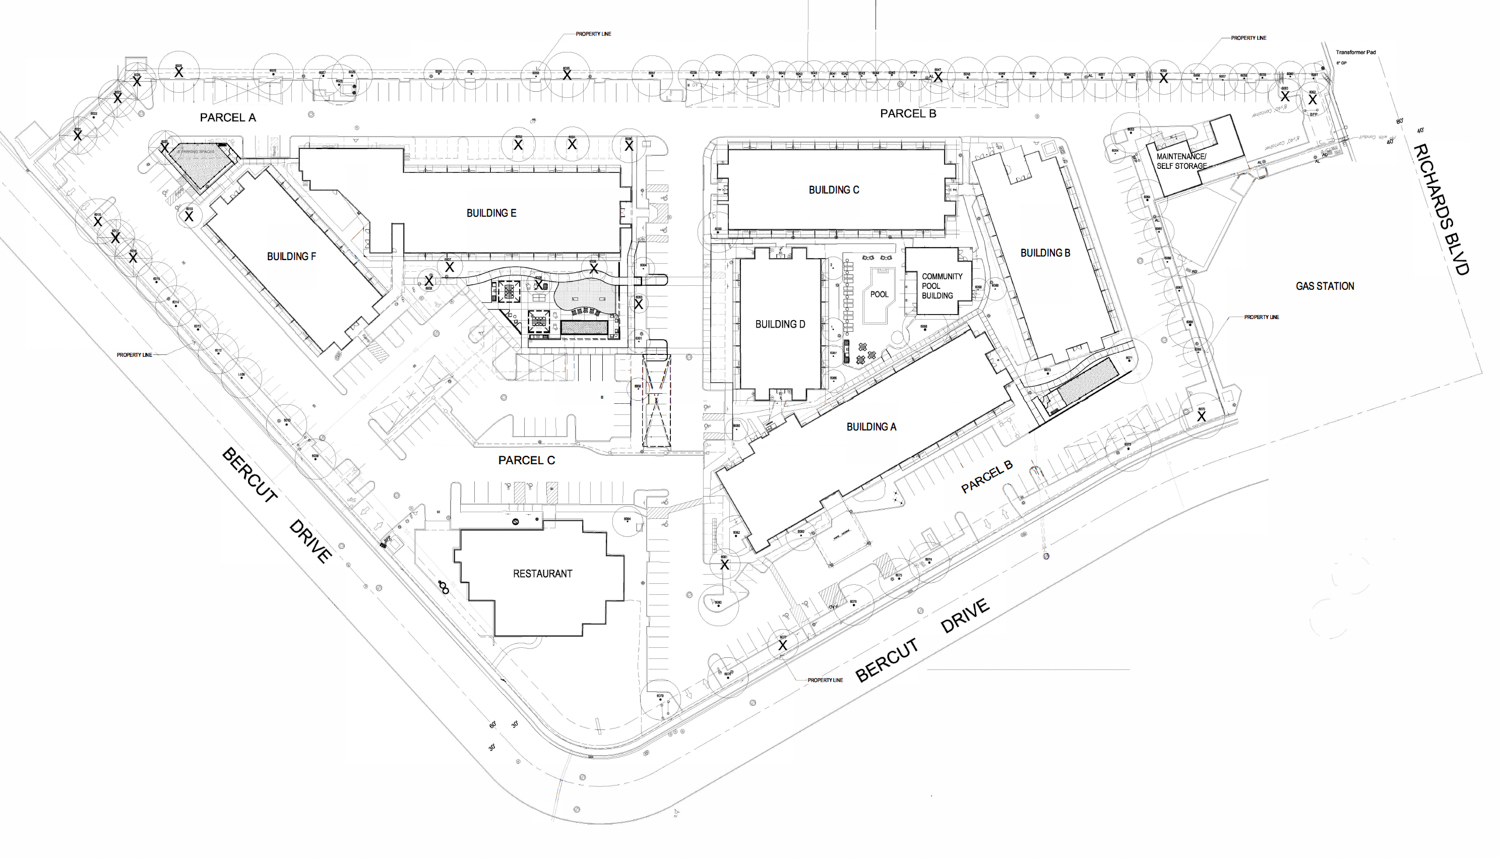 Hawthorn Apartments at 321 Bercut Drive, map via LPAS